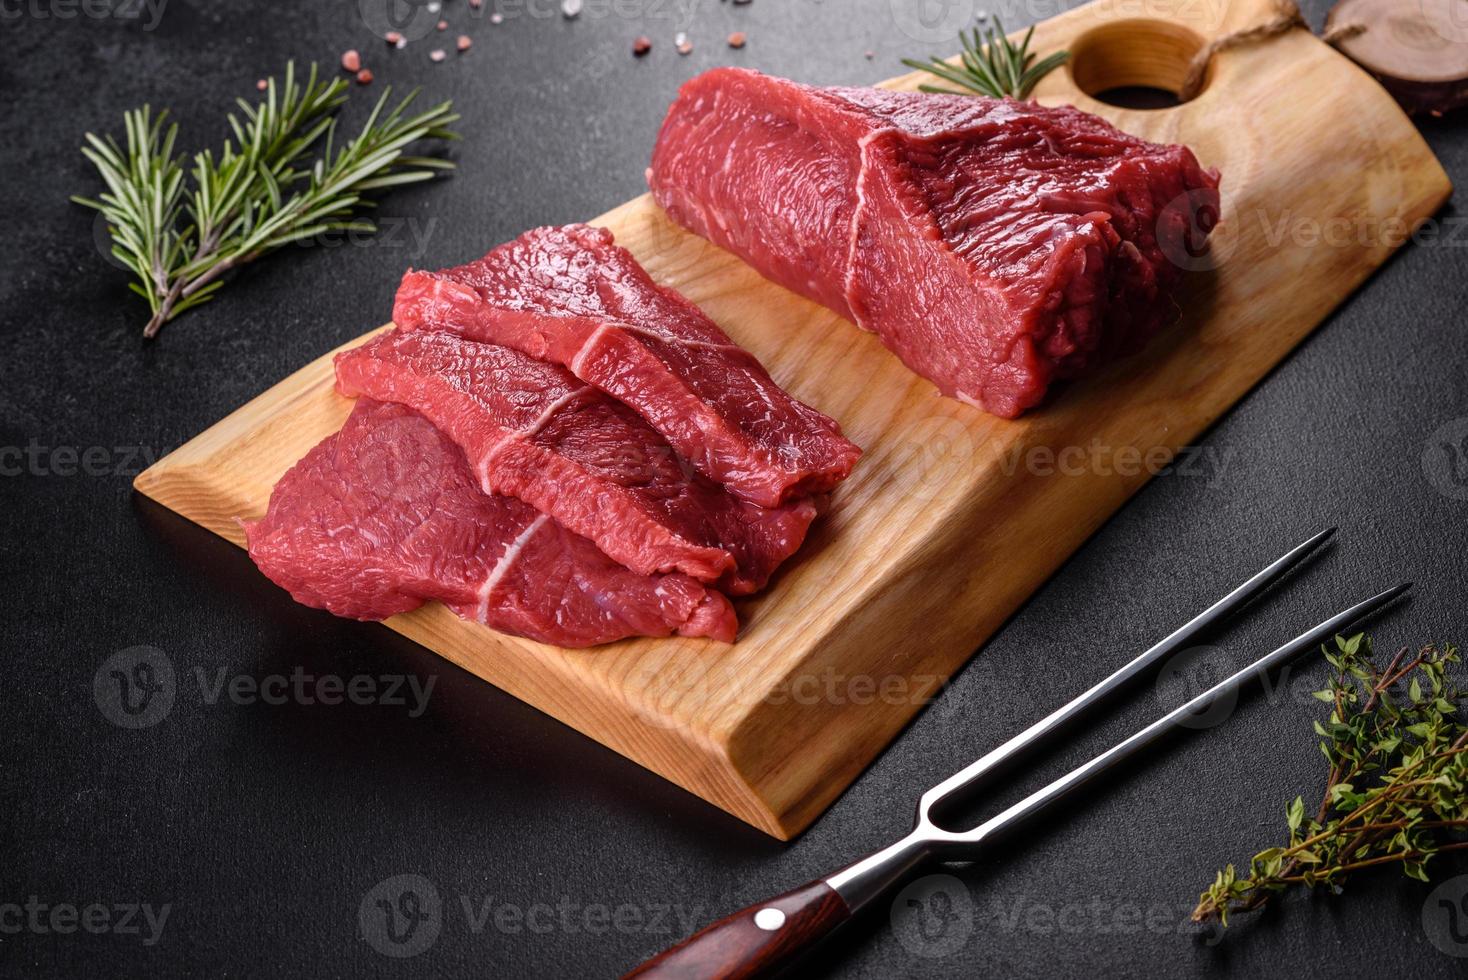 färskt rått nötkött för att göra utsökt saftig biff med kryddor och örter foto